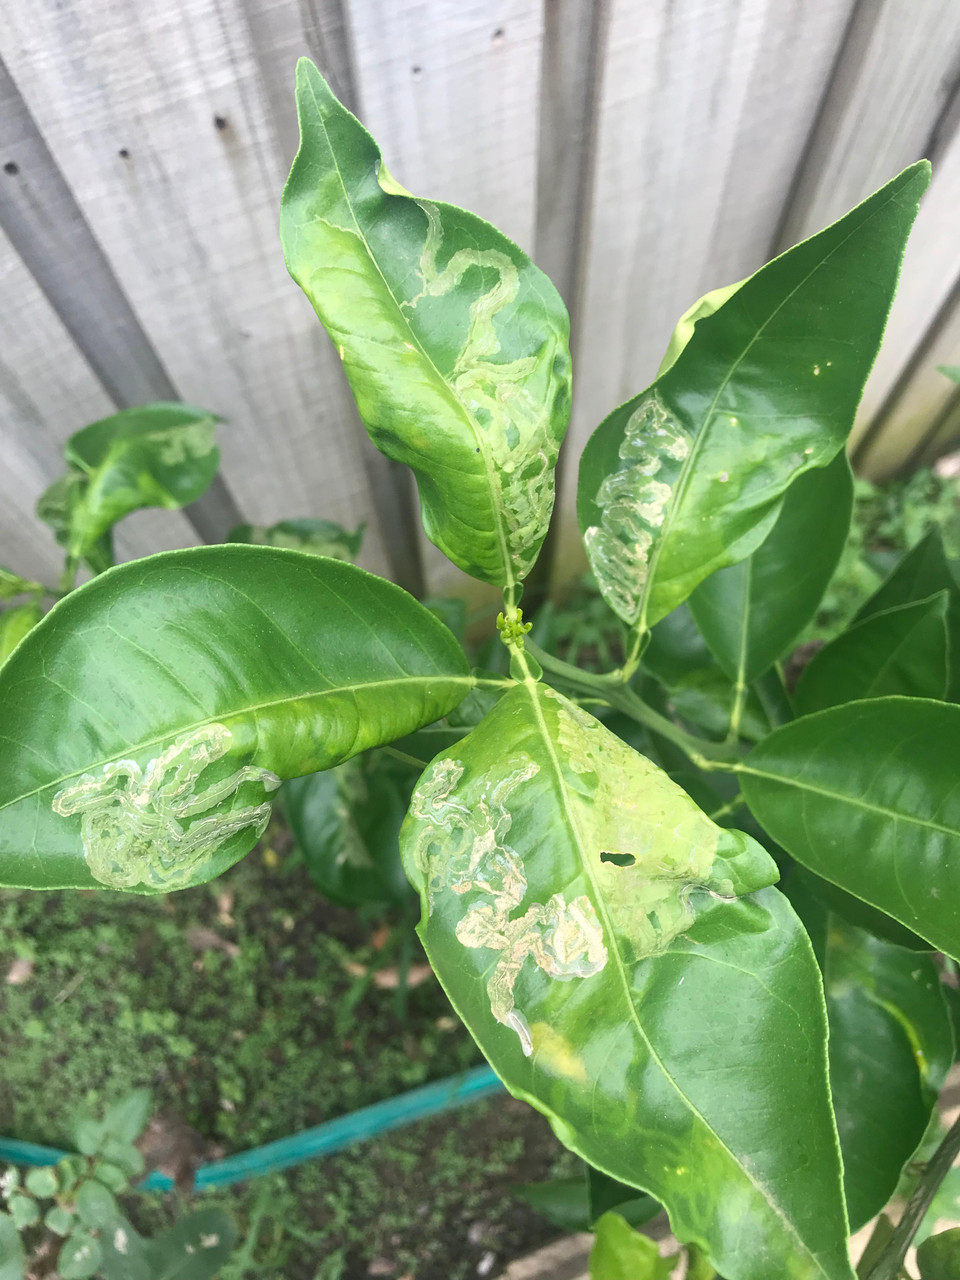 Citrus Leafminer Damage to Leaf